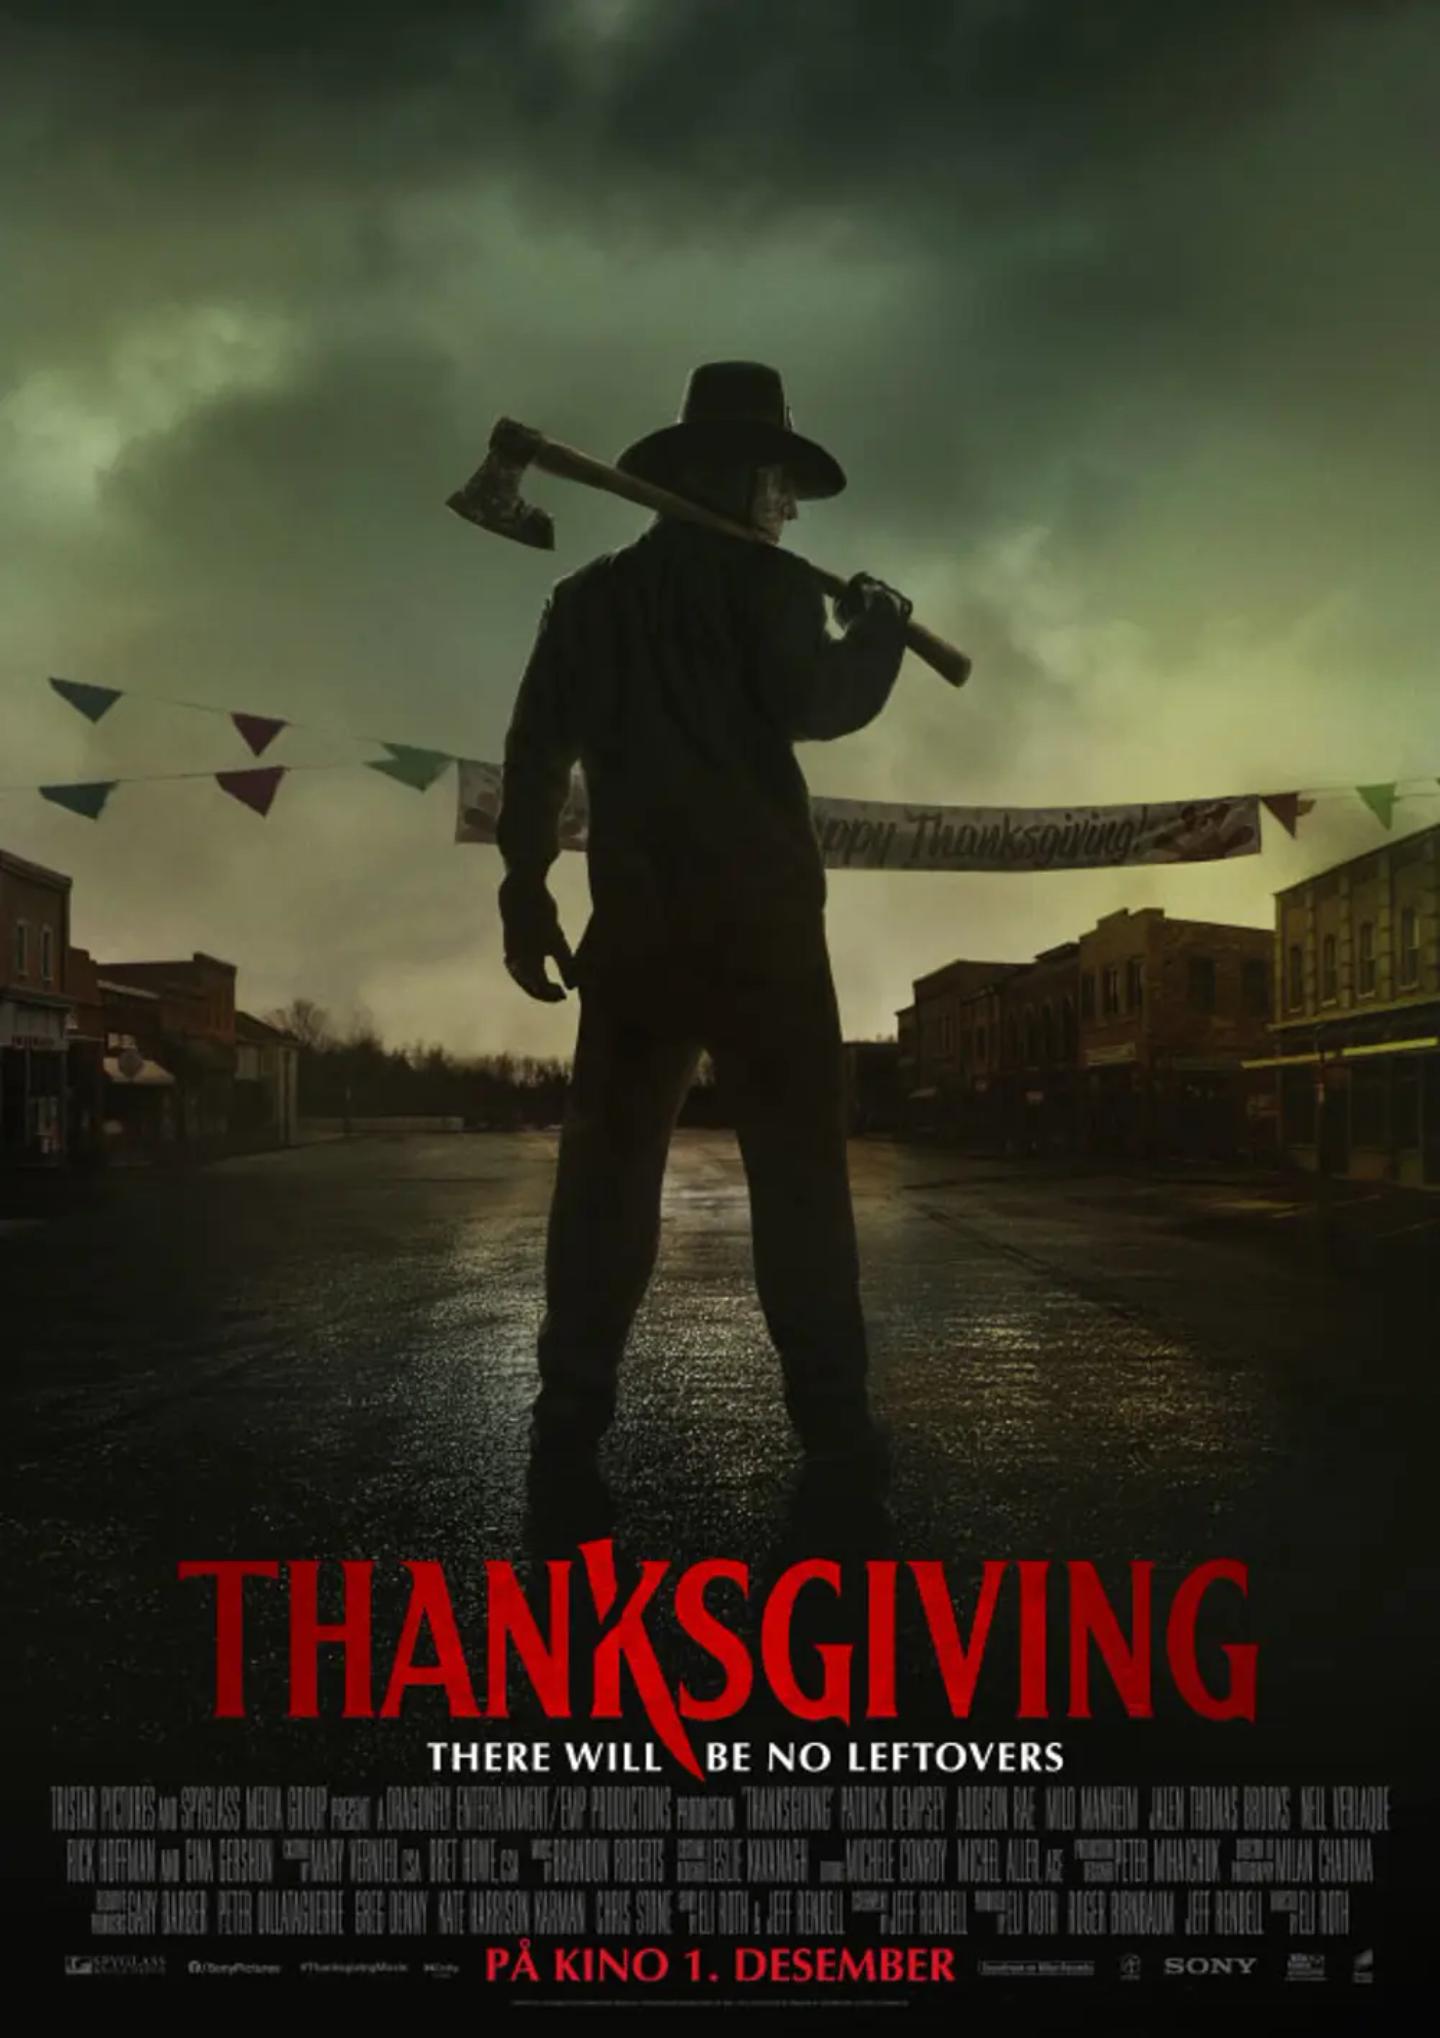 Plakat for 'Thanksgiving'